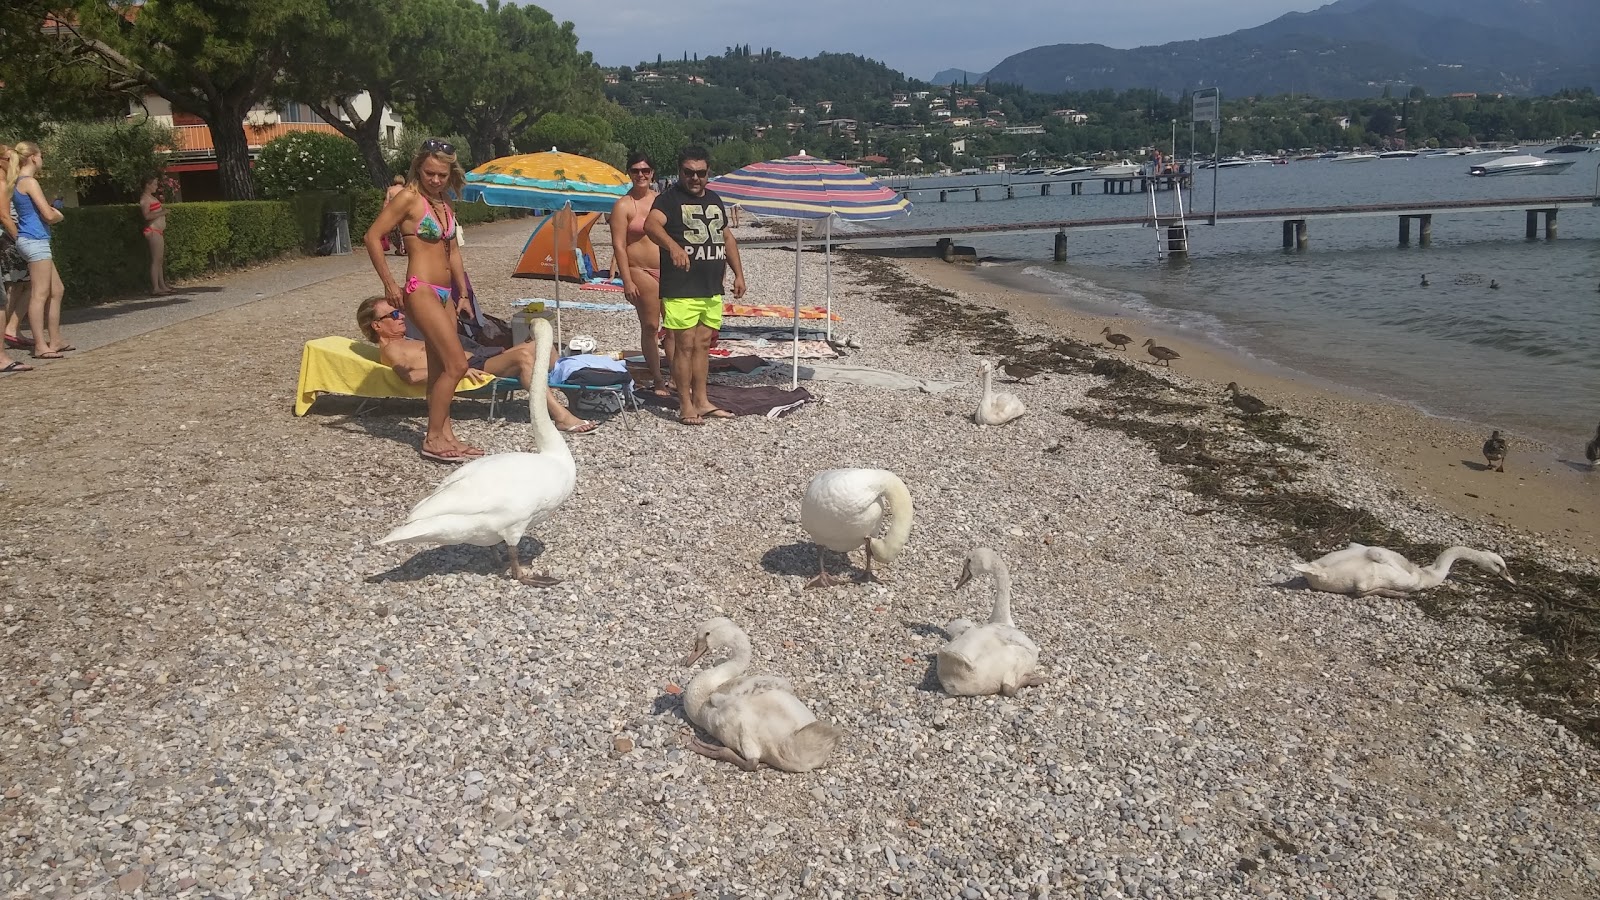 Zdjęcie Pieve Vecchia Beach - popularne miejsce wśród znawców relaksu